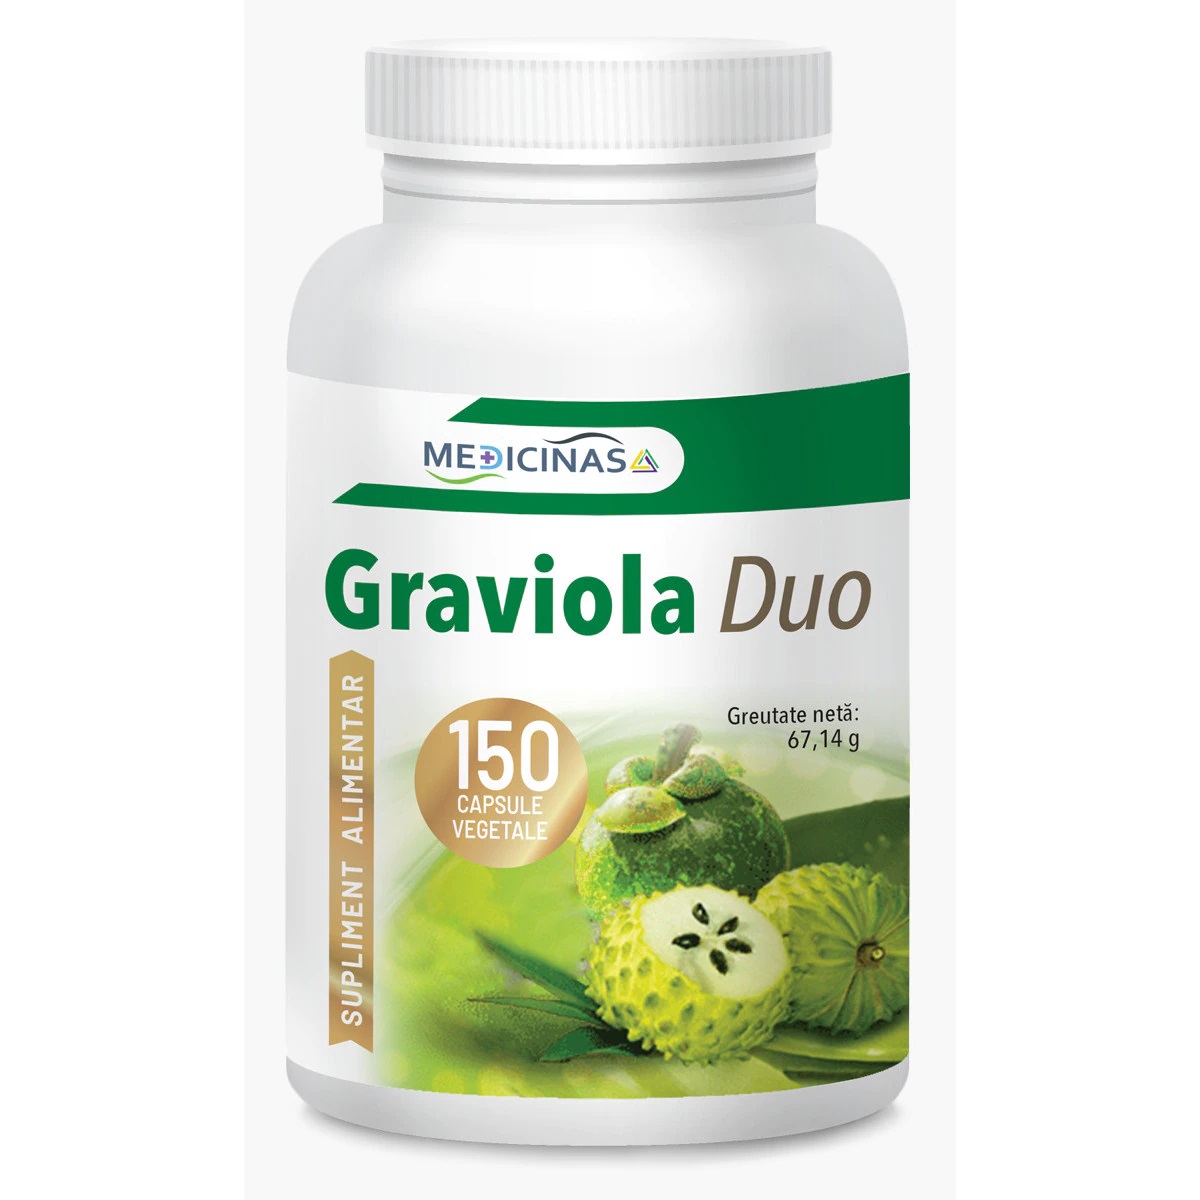 Graviola Duo, 150 capsule, Medicinas                           